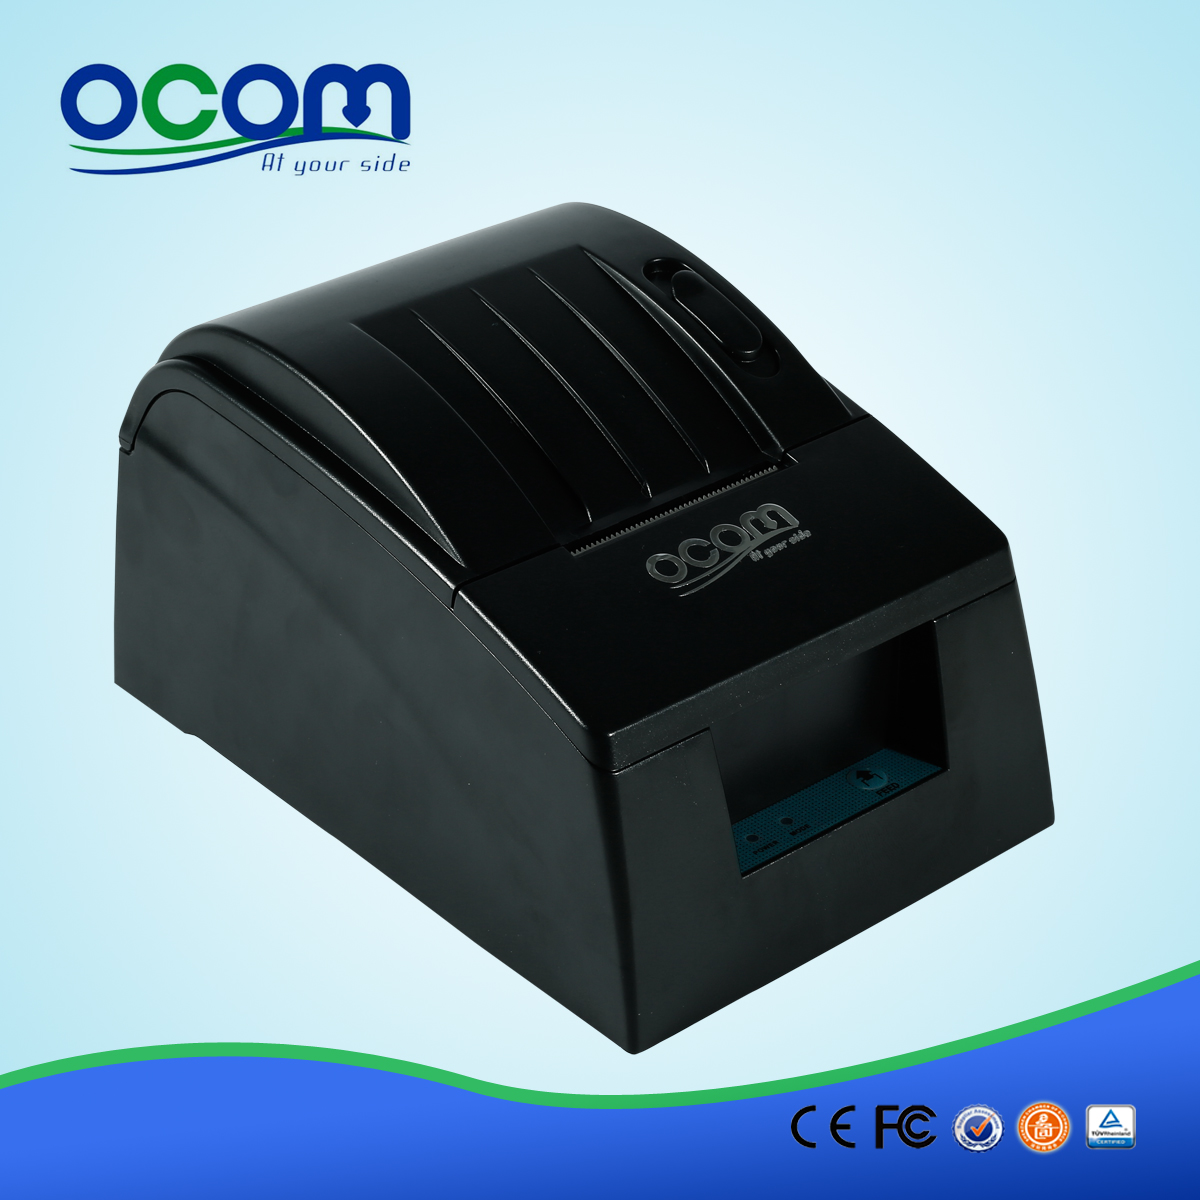 58 millimetri Pos stampante termica per ricevute Prezzo (OCPP-586)